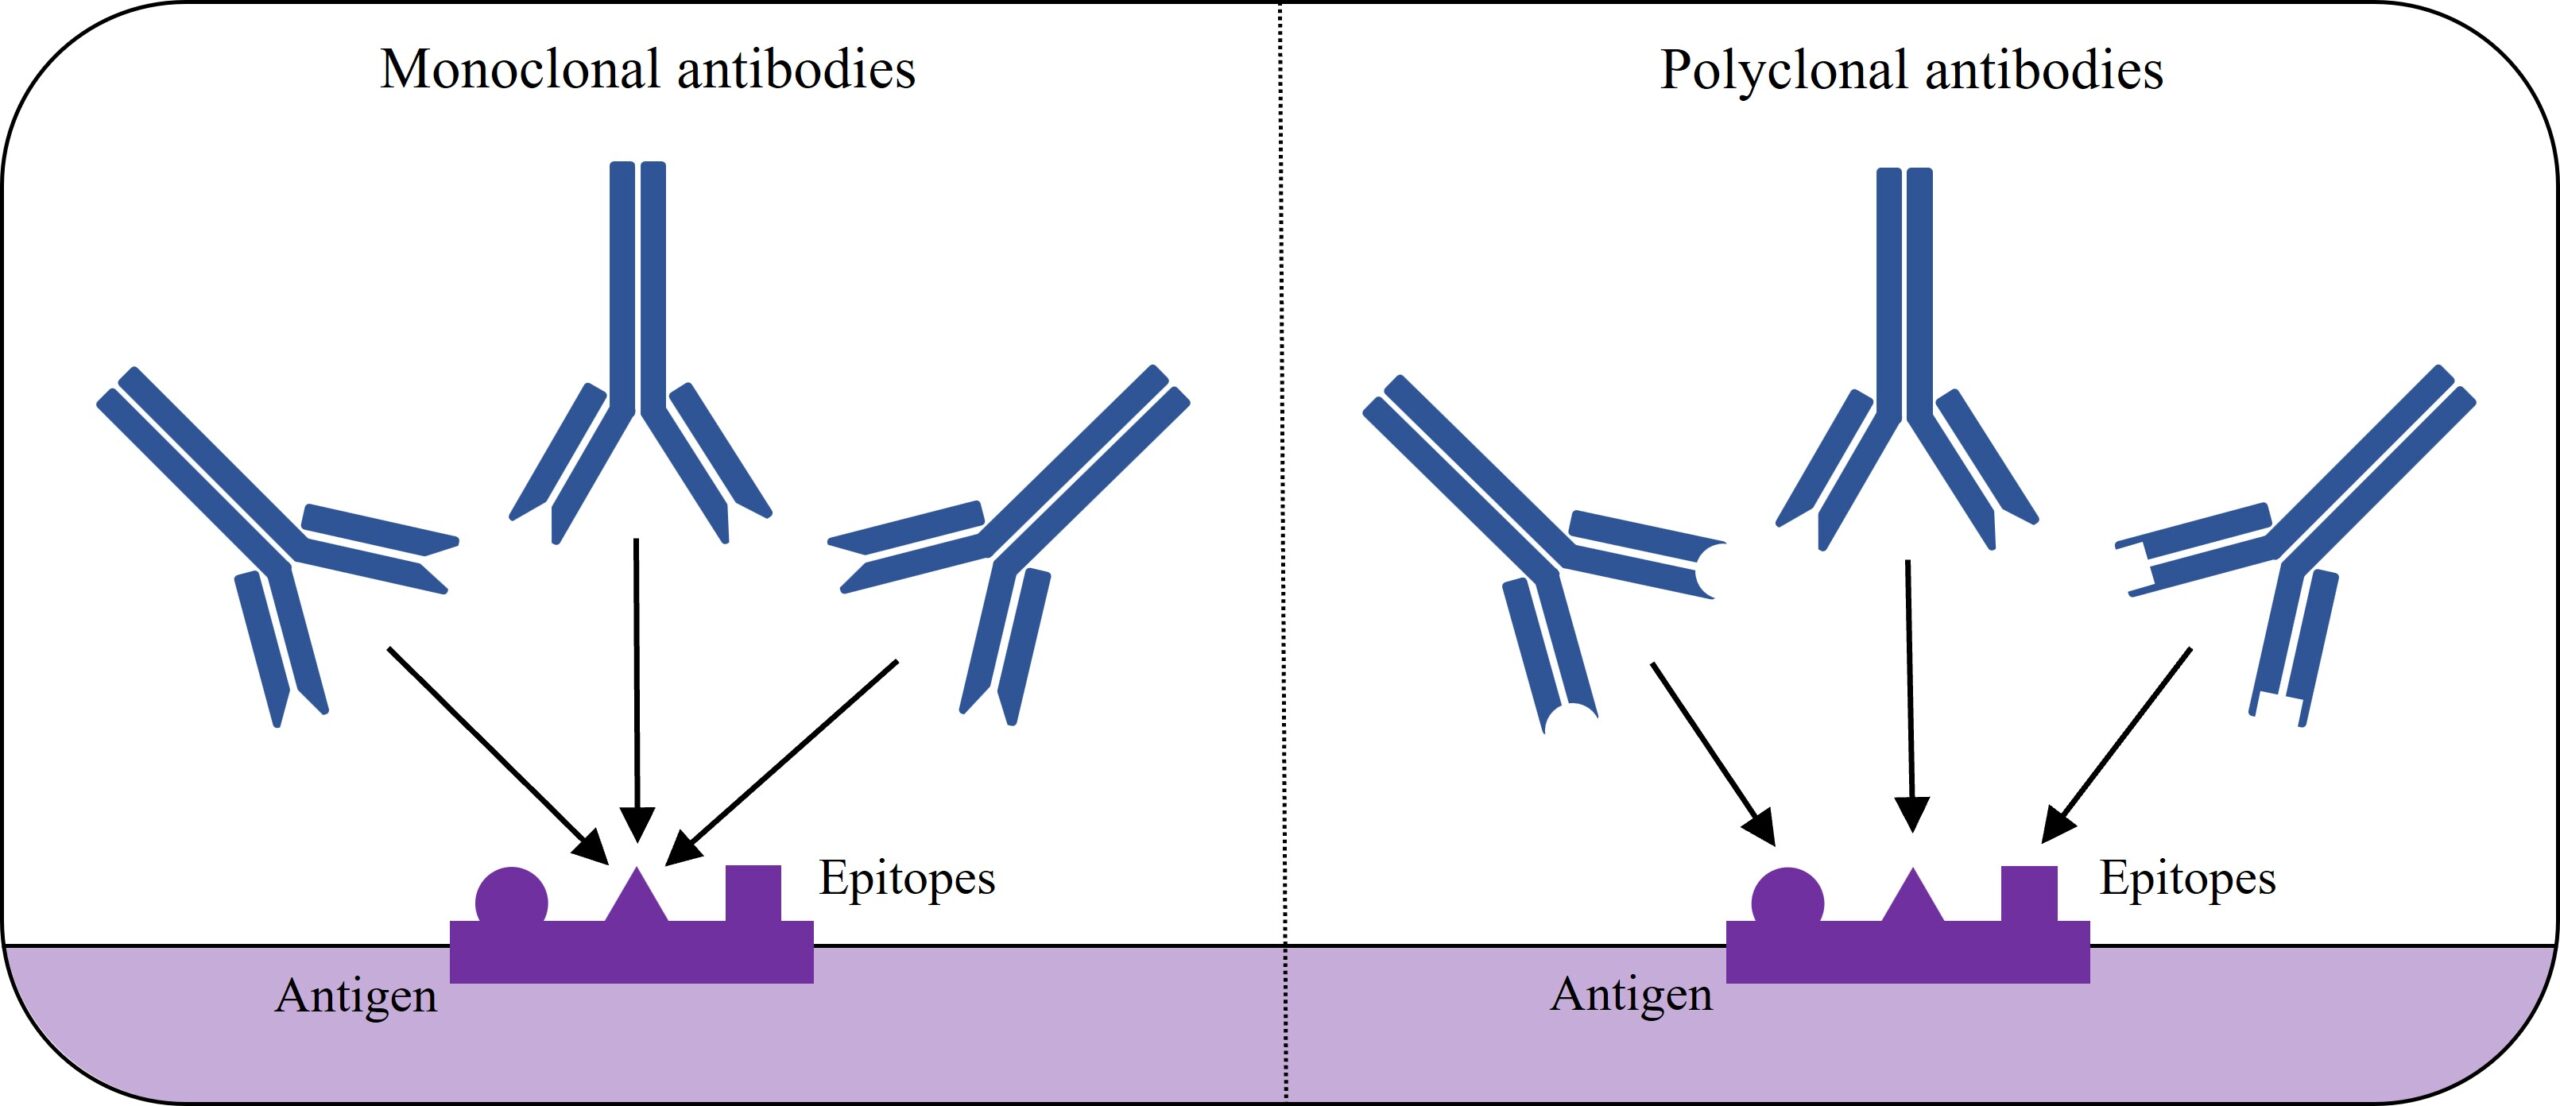 Clonality of antibodies